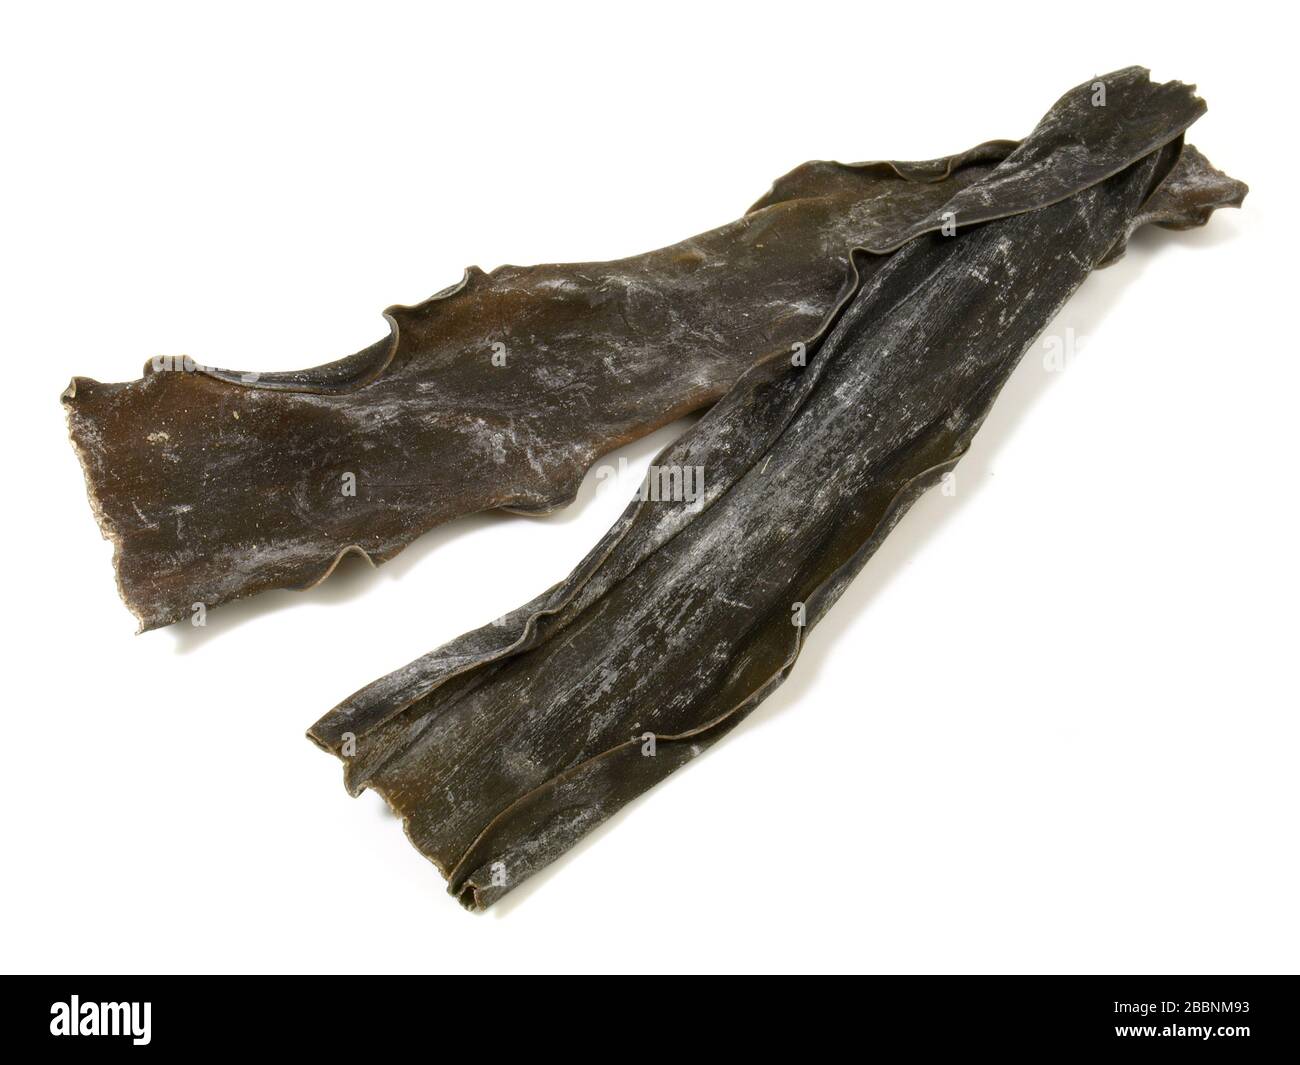 Dried Kombu - Seaweed isoladet on white background Stock Photo